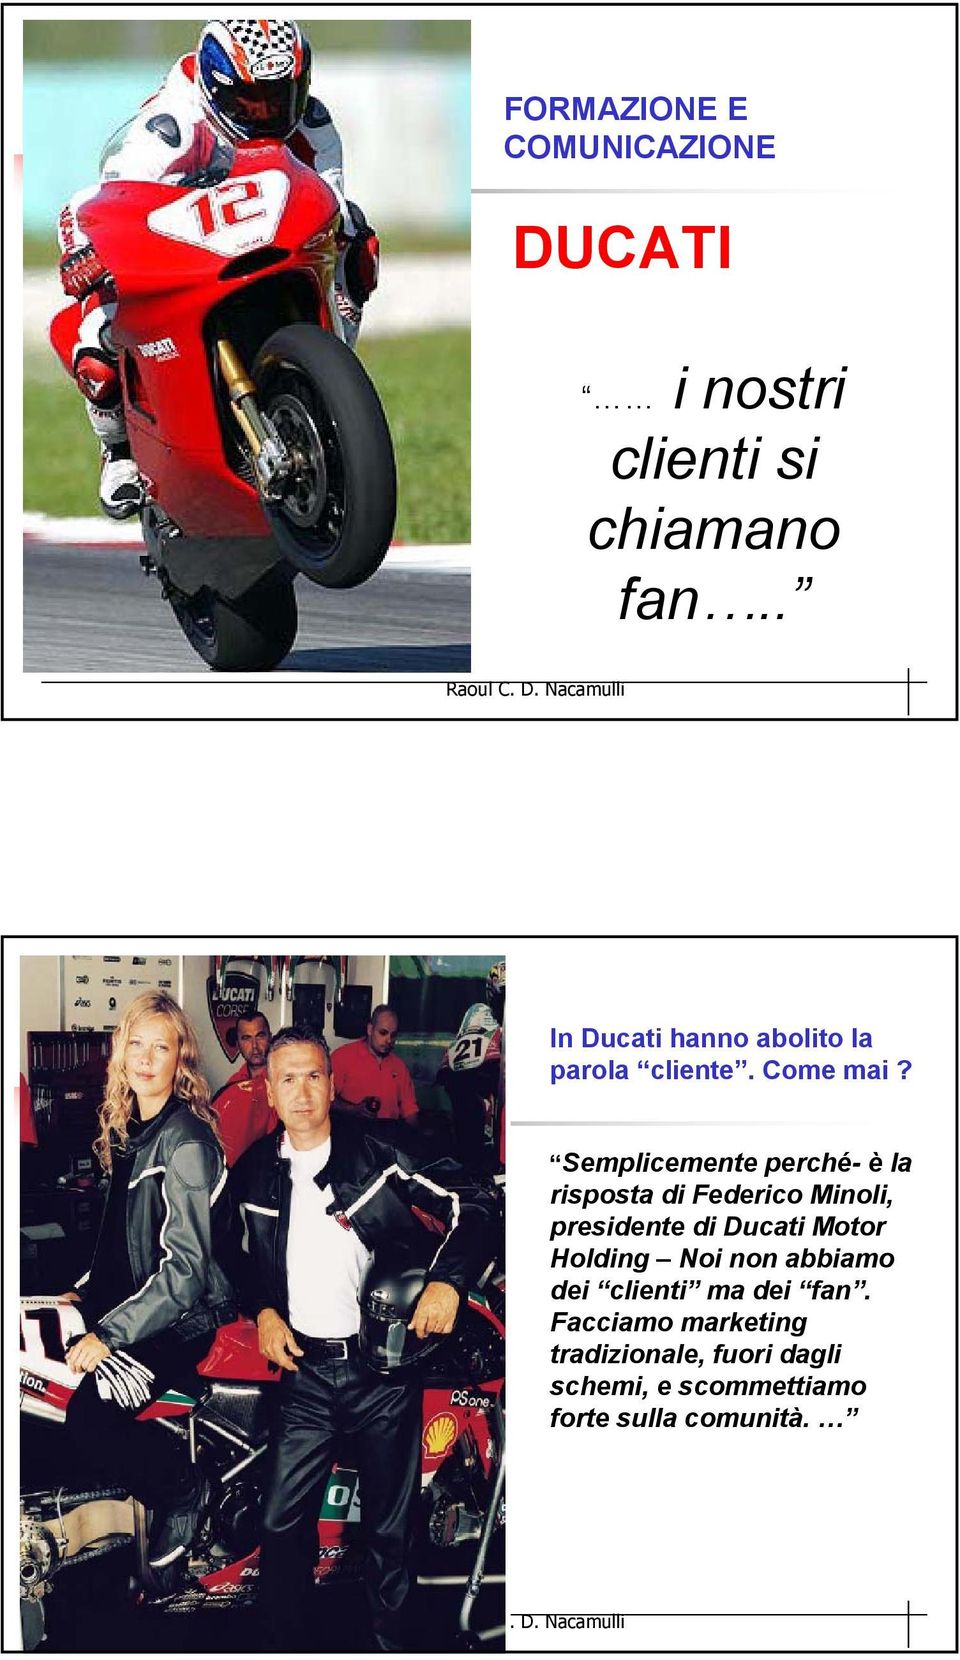 Semplicemente perché- è la risposta di Federico Minoli, presidente di Ducati Motor